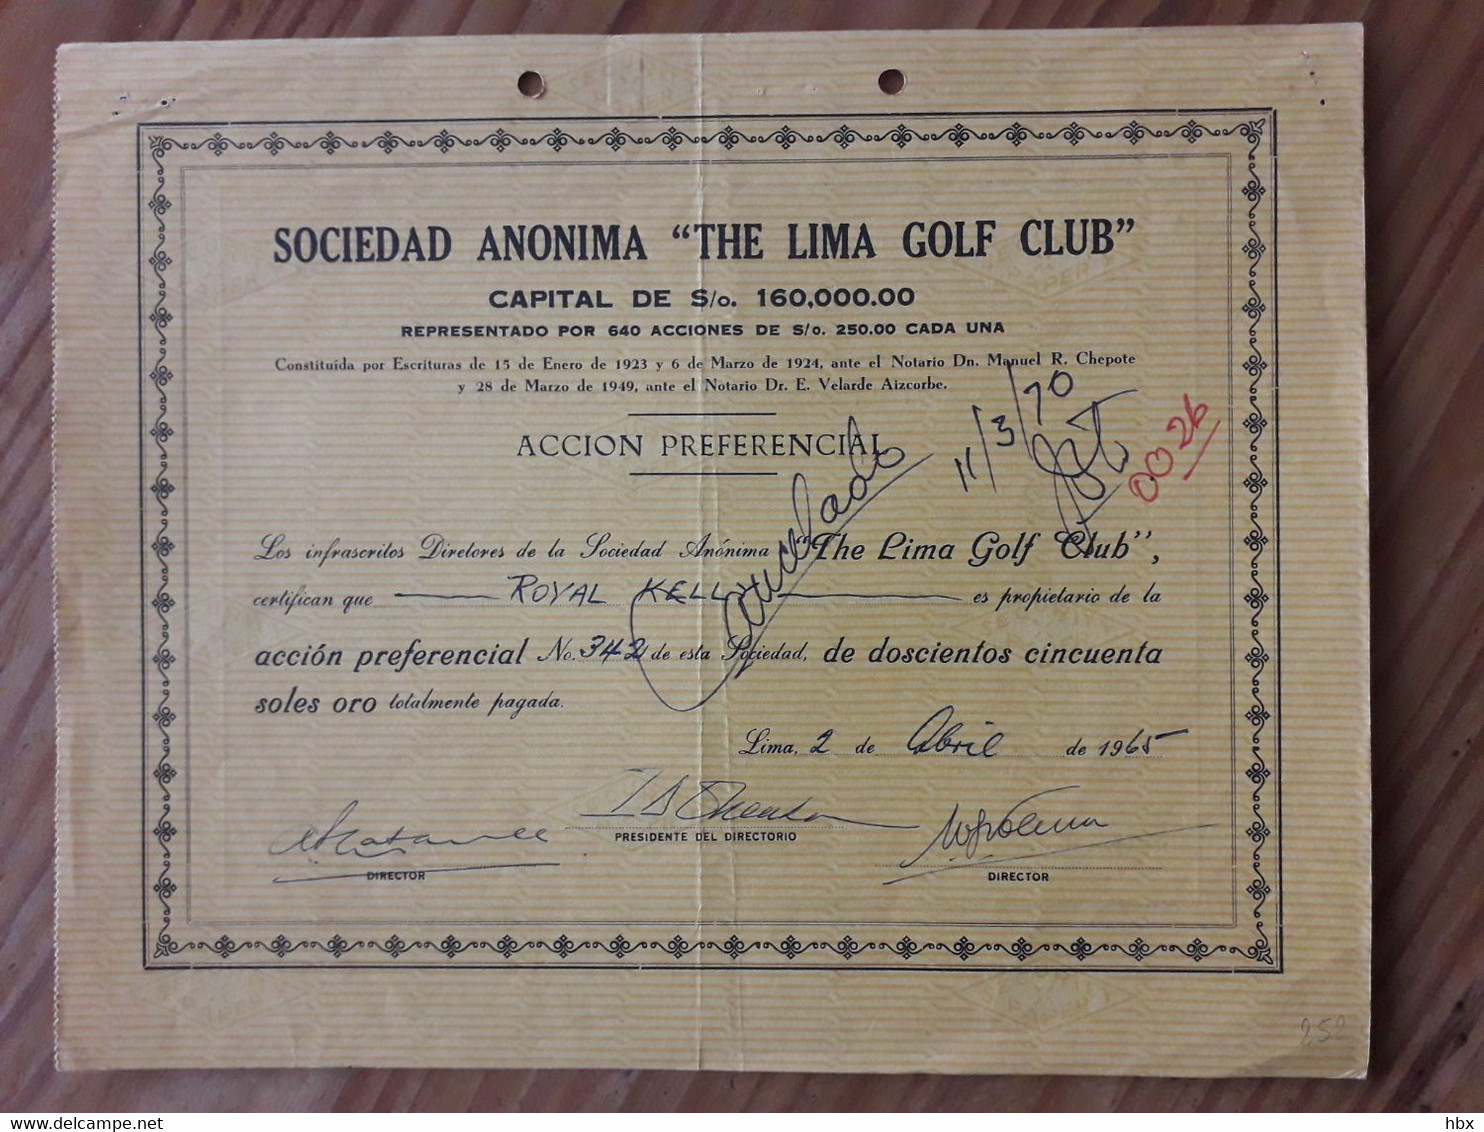 The Lima Golf Club - 1965 - Deportes